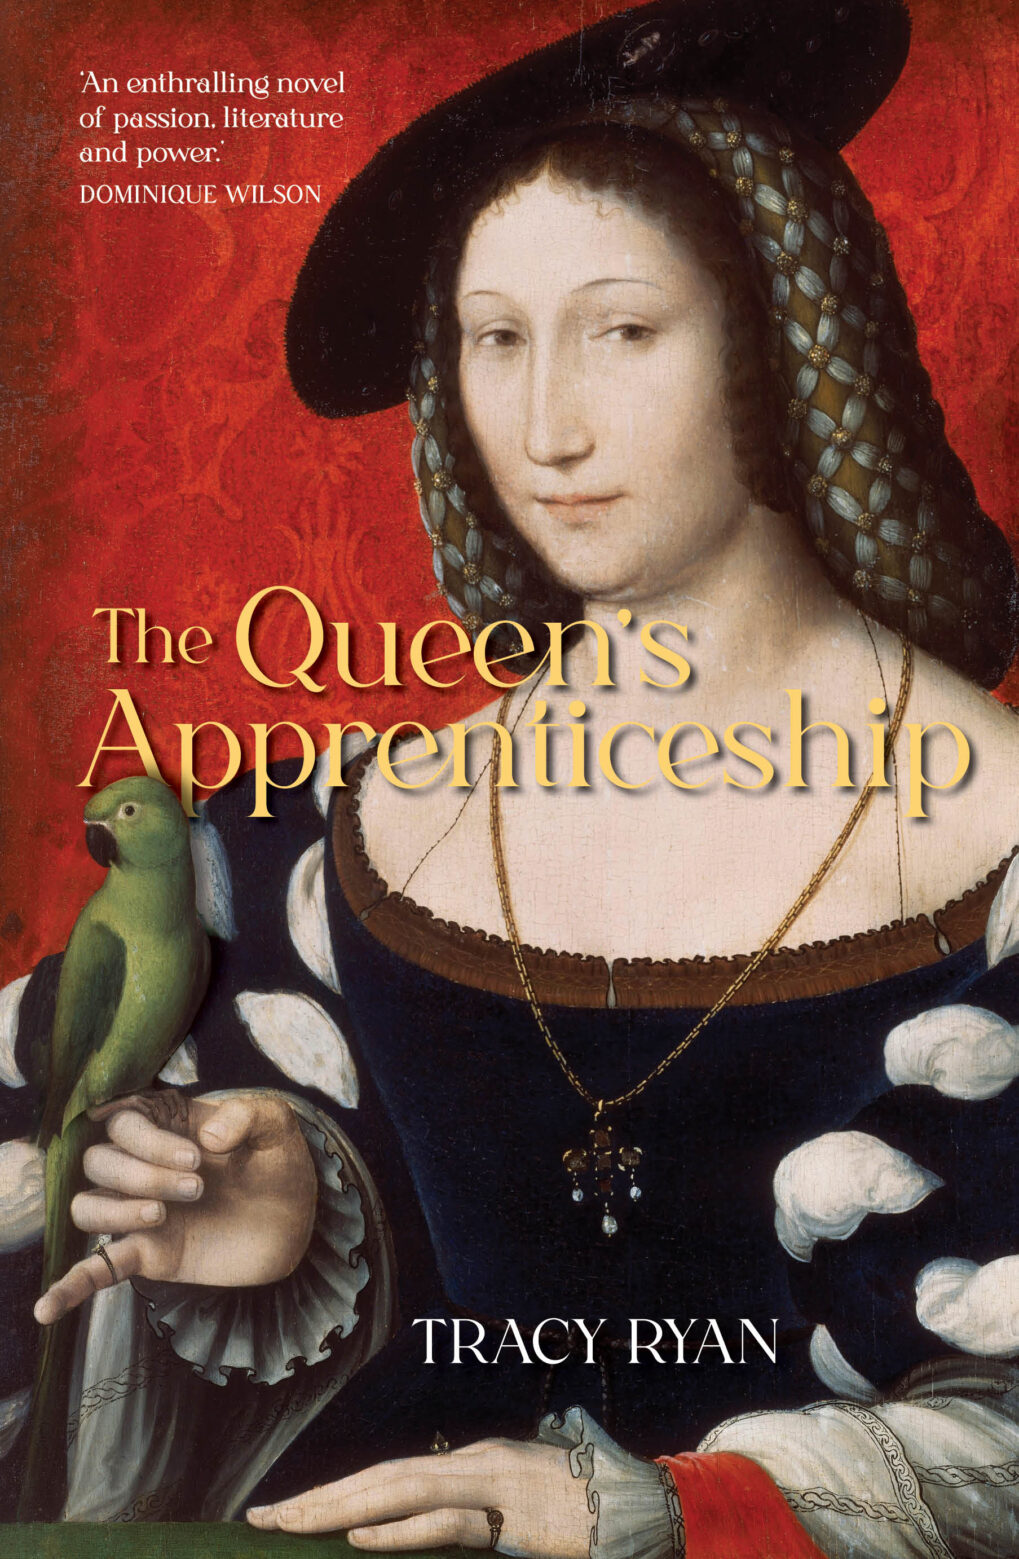 The Queen's Apprenticeship